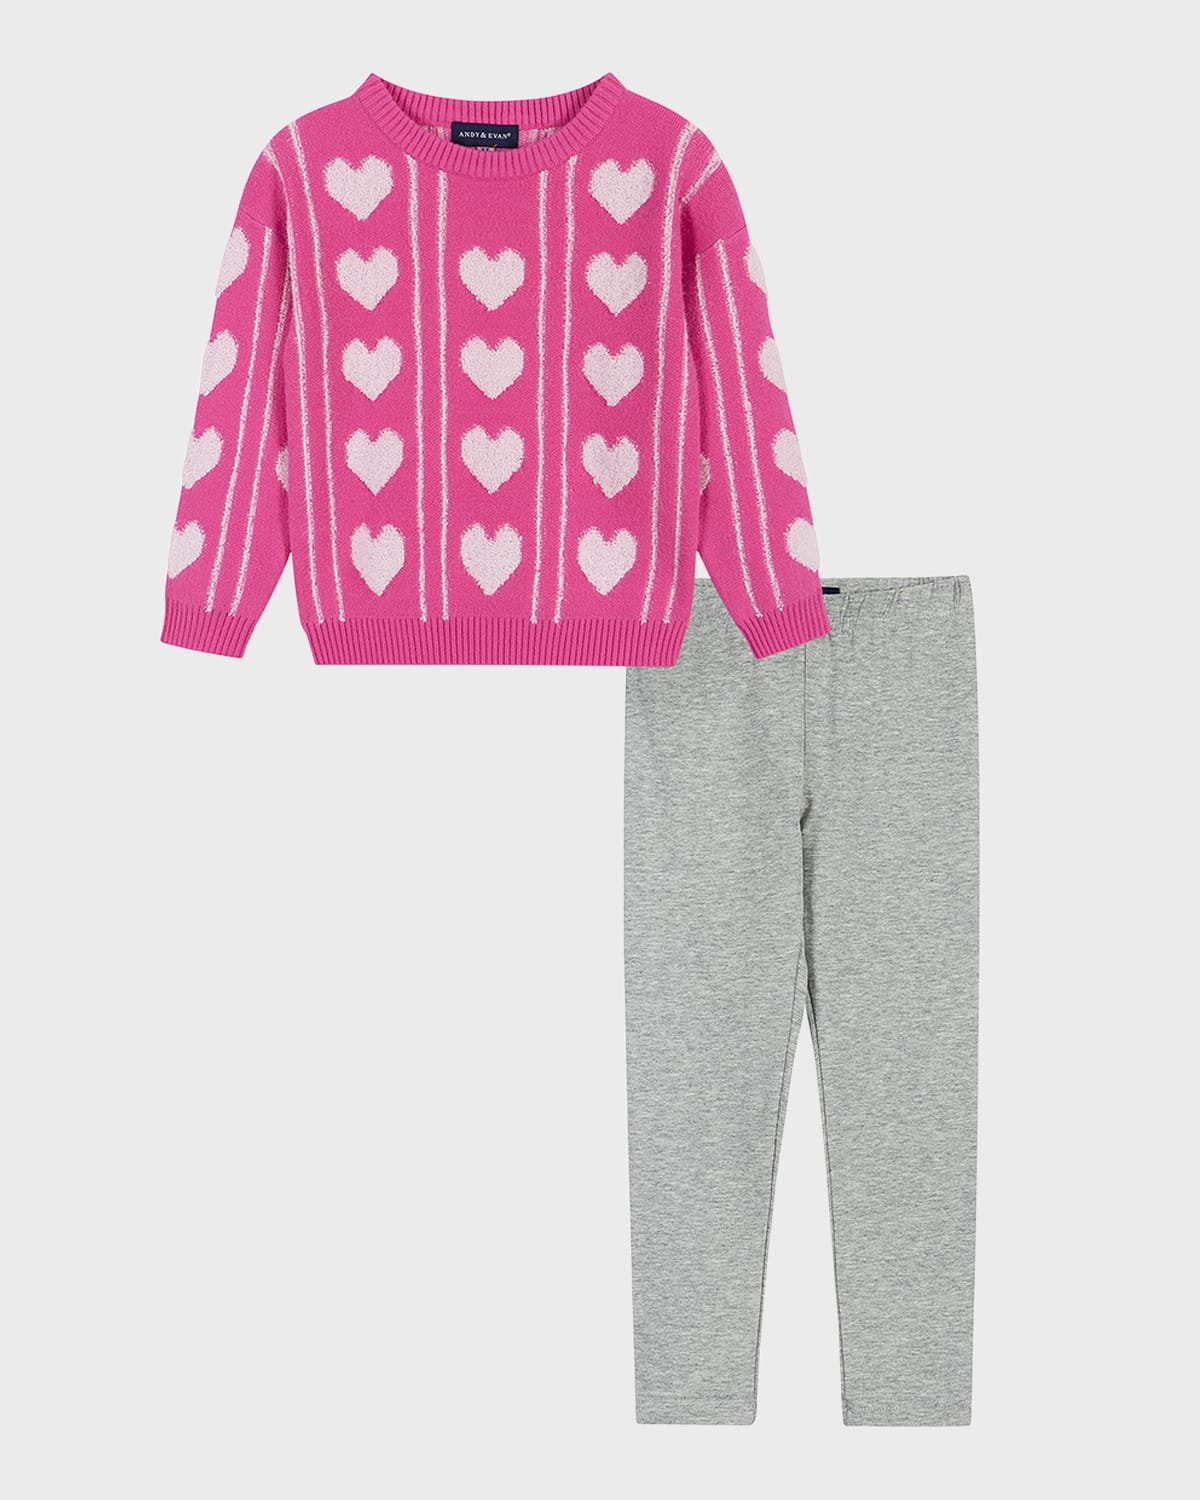 Andy & Evan Kids' Toddler/child Girls Heart Sherpa Sweater & Legging Set In Pink